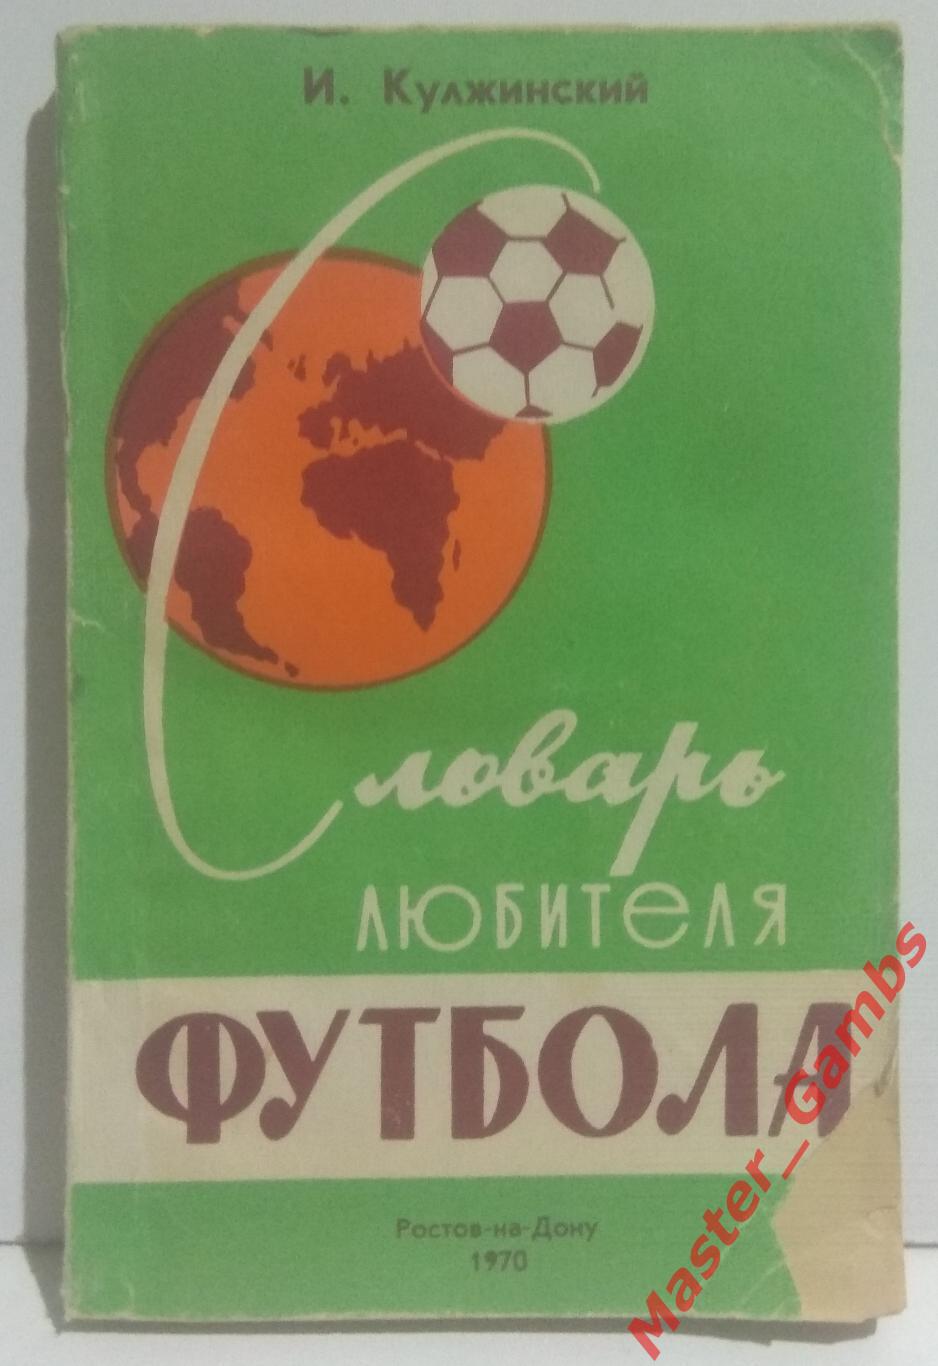 Кулжинский - Словарь любителя футбола (2-е издание) ростов 1970*